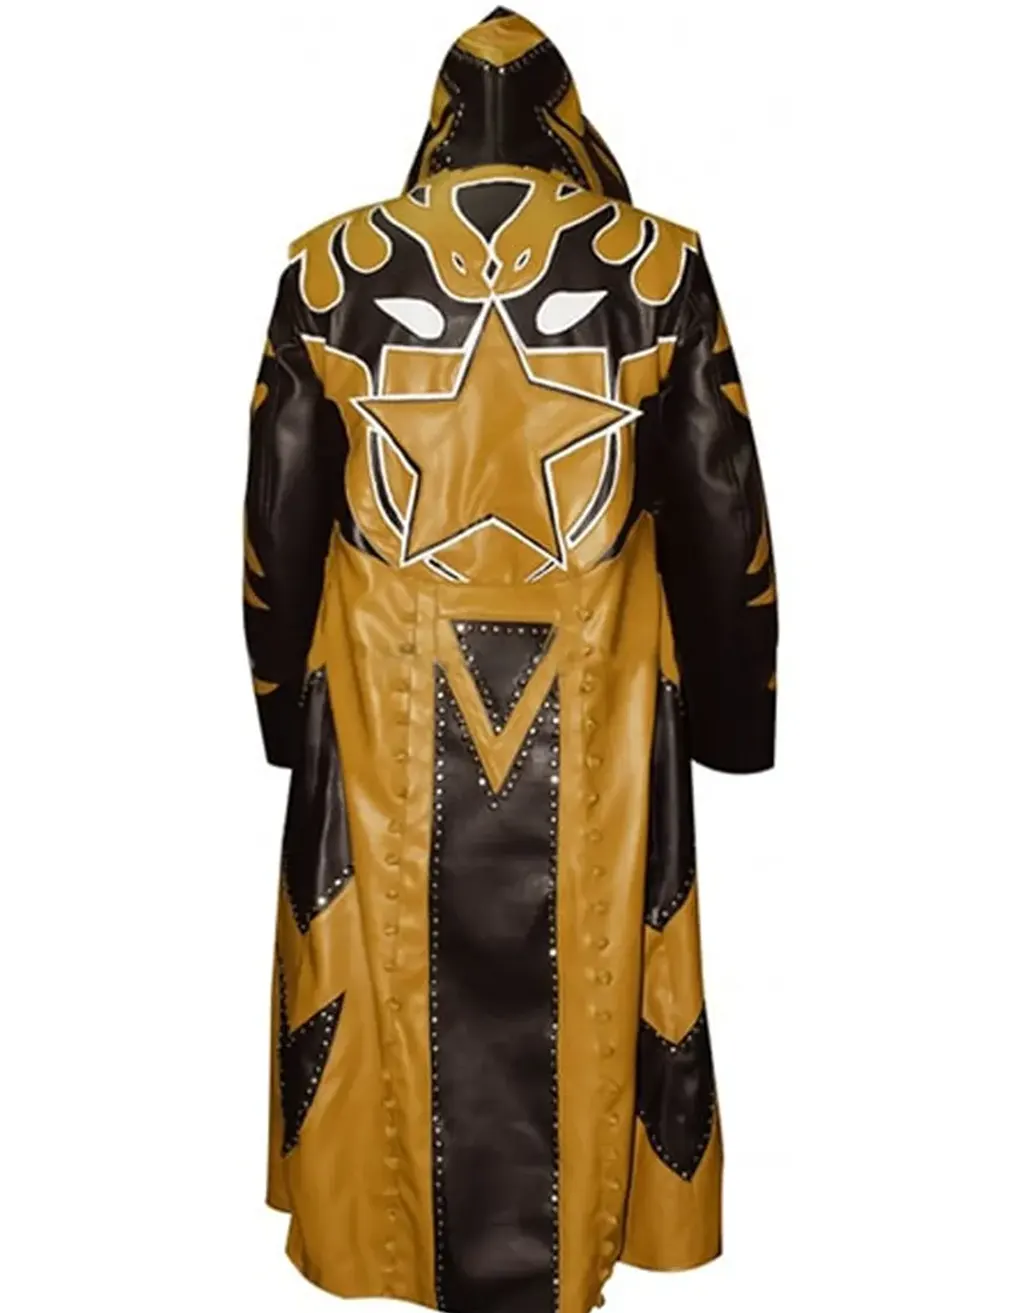 WWE Wrestler Goldust Black And Golden Leather Coat